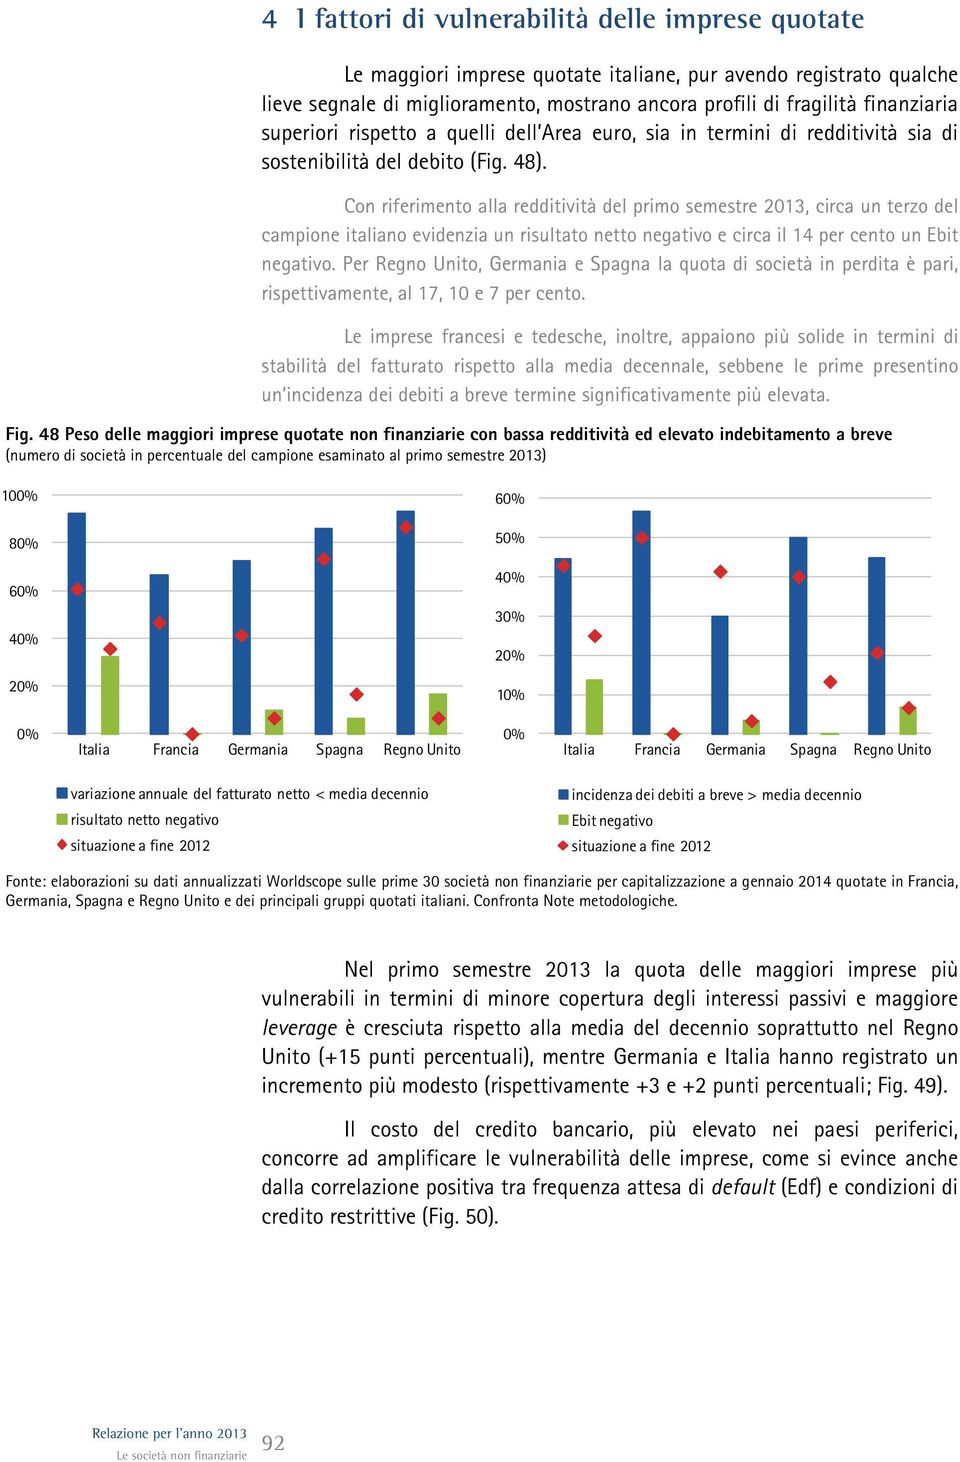 Con riferimento alla redditività del primo semestre 213, circa un terzo del campione italiano evidenzia un risultato netto negativo e circa il 14 per cento un Ebit negativo.